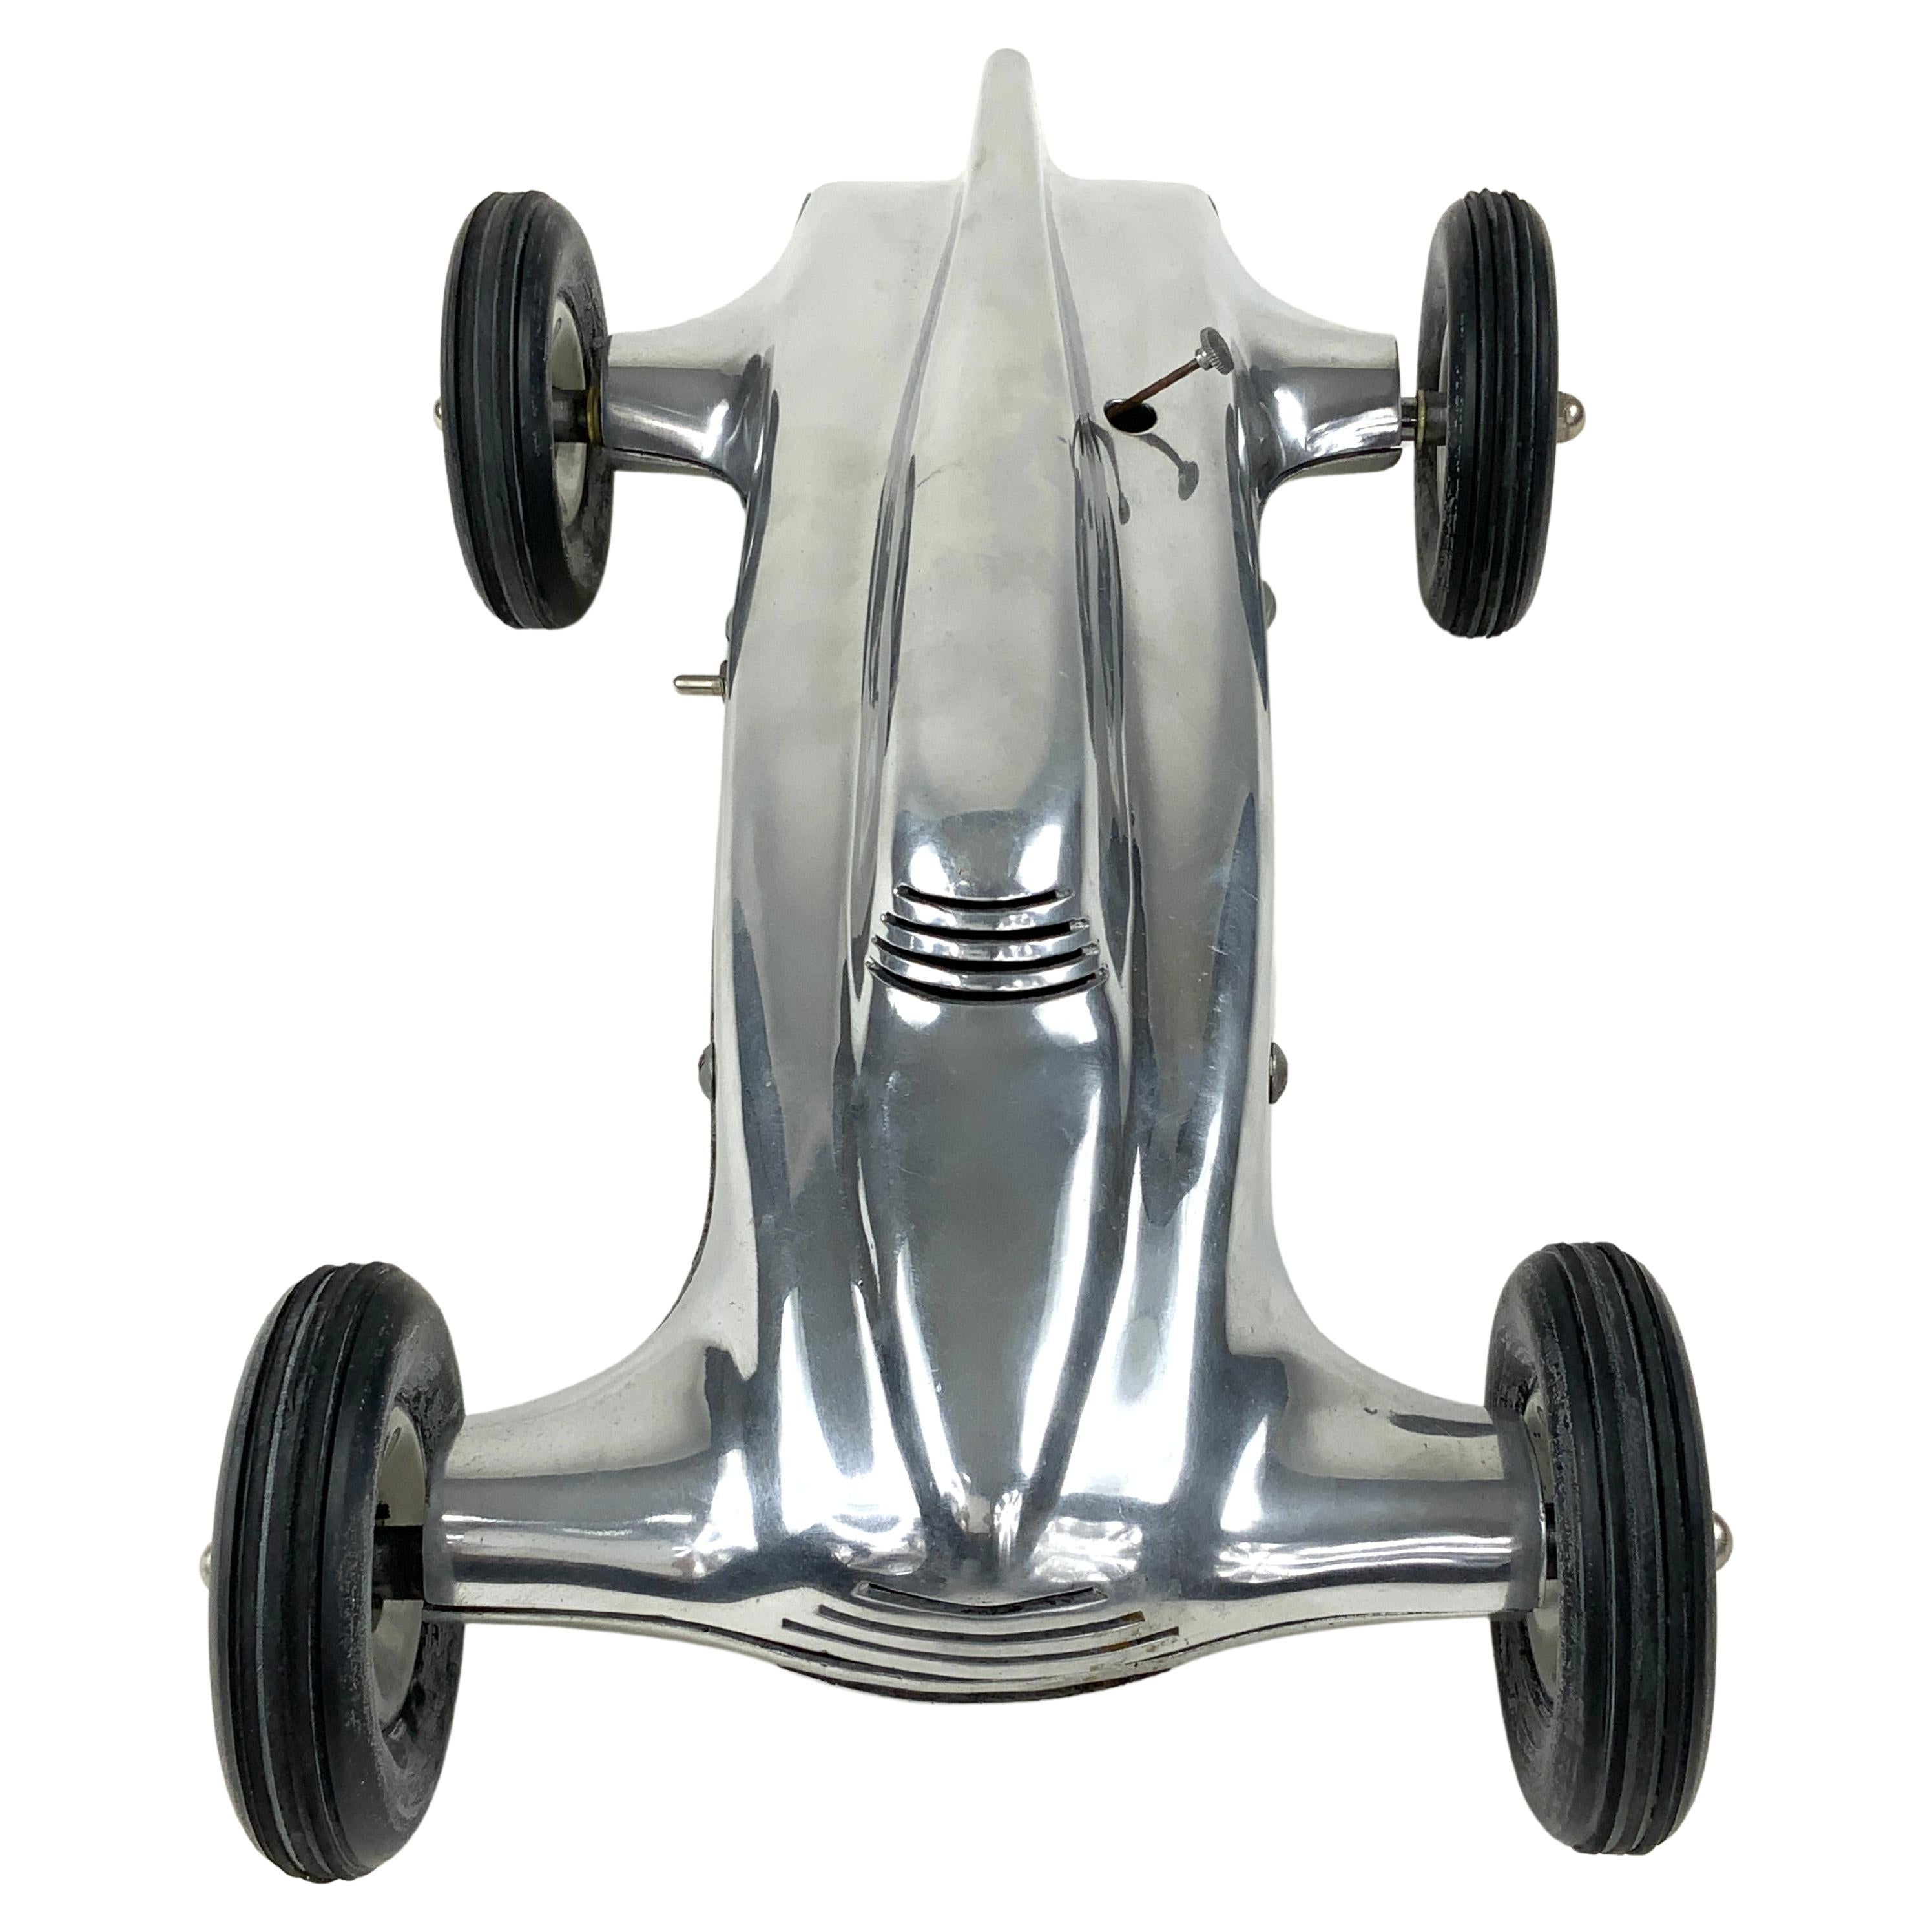 Dieser originale Rexner Zipper Tether Car Racer von 1940 mit seinem stromlinienförmigen Design ist in ausgezeichnetem Zustand.  Angetrieben wird er von einem Super-Cyclone-Motor mit 60er-Zündung, der die Hinterräder des Wagens über ein